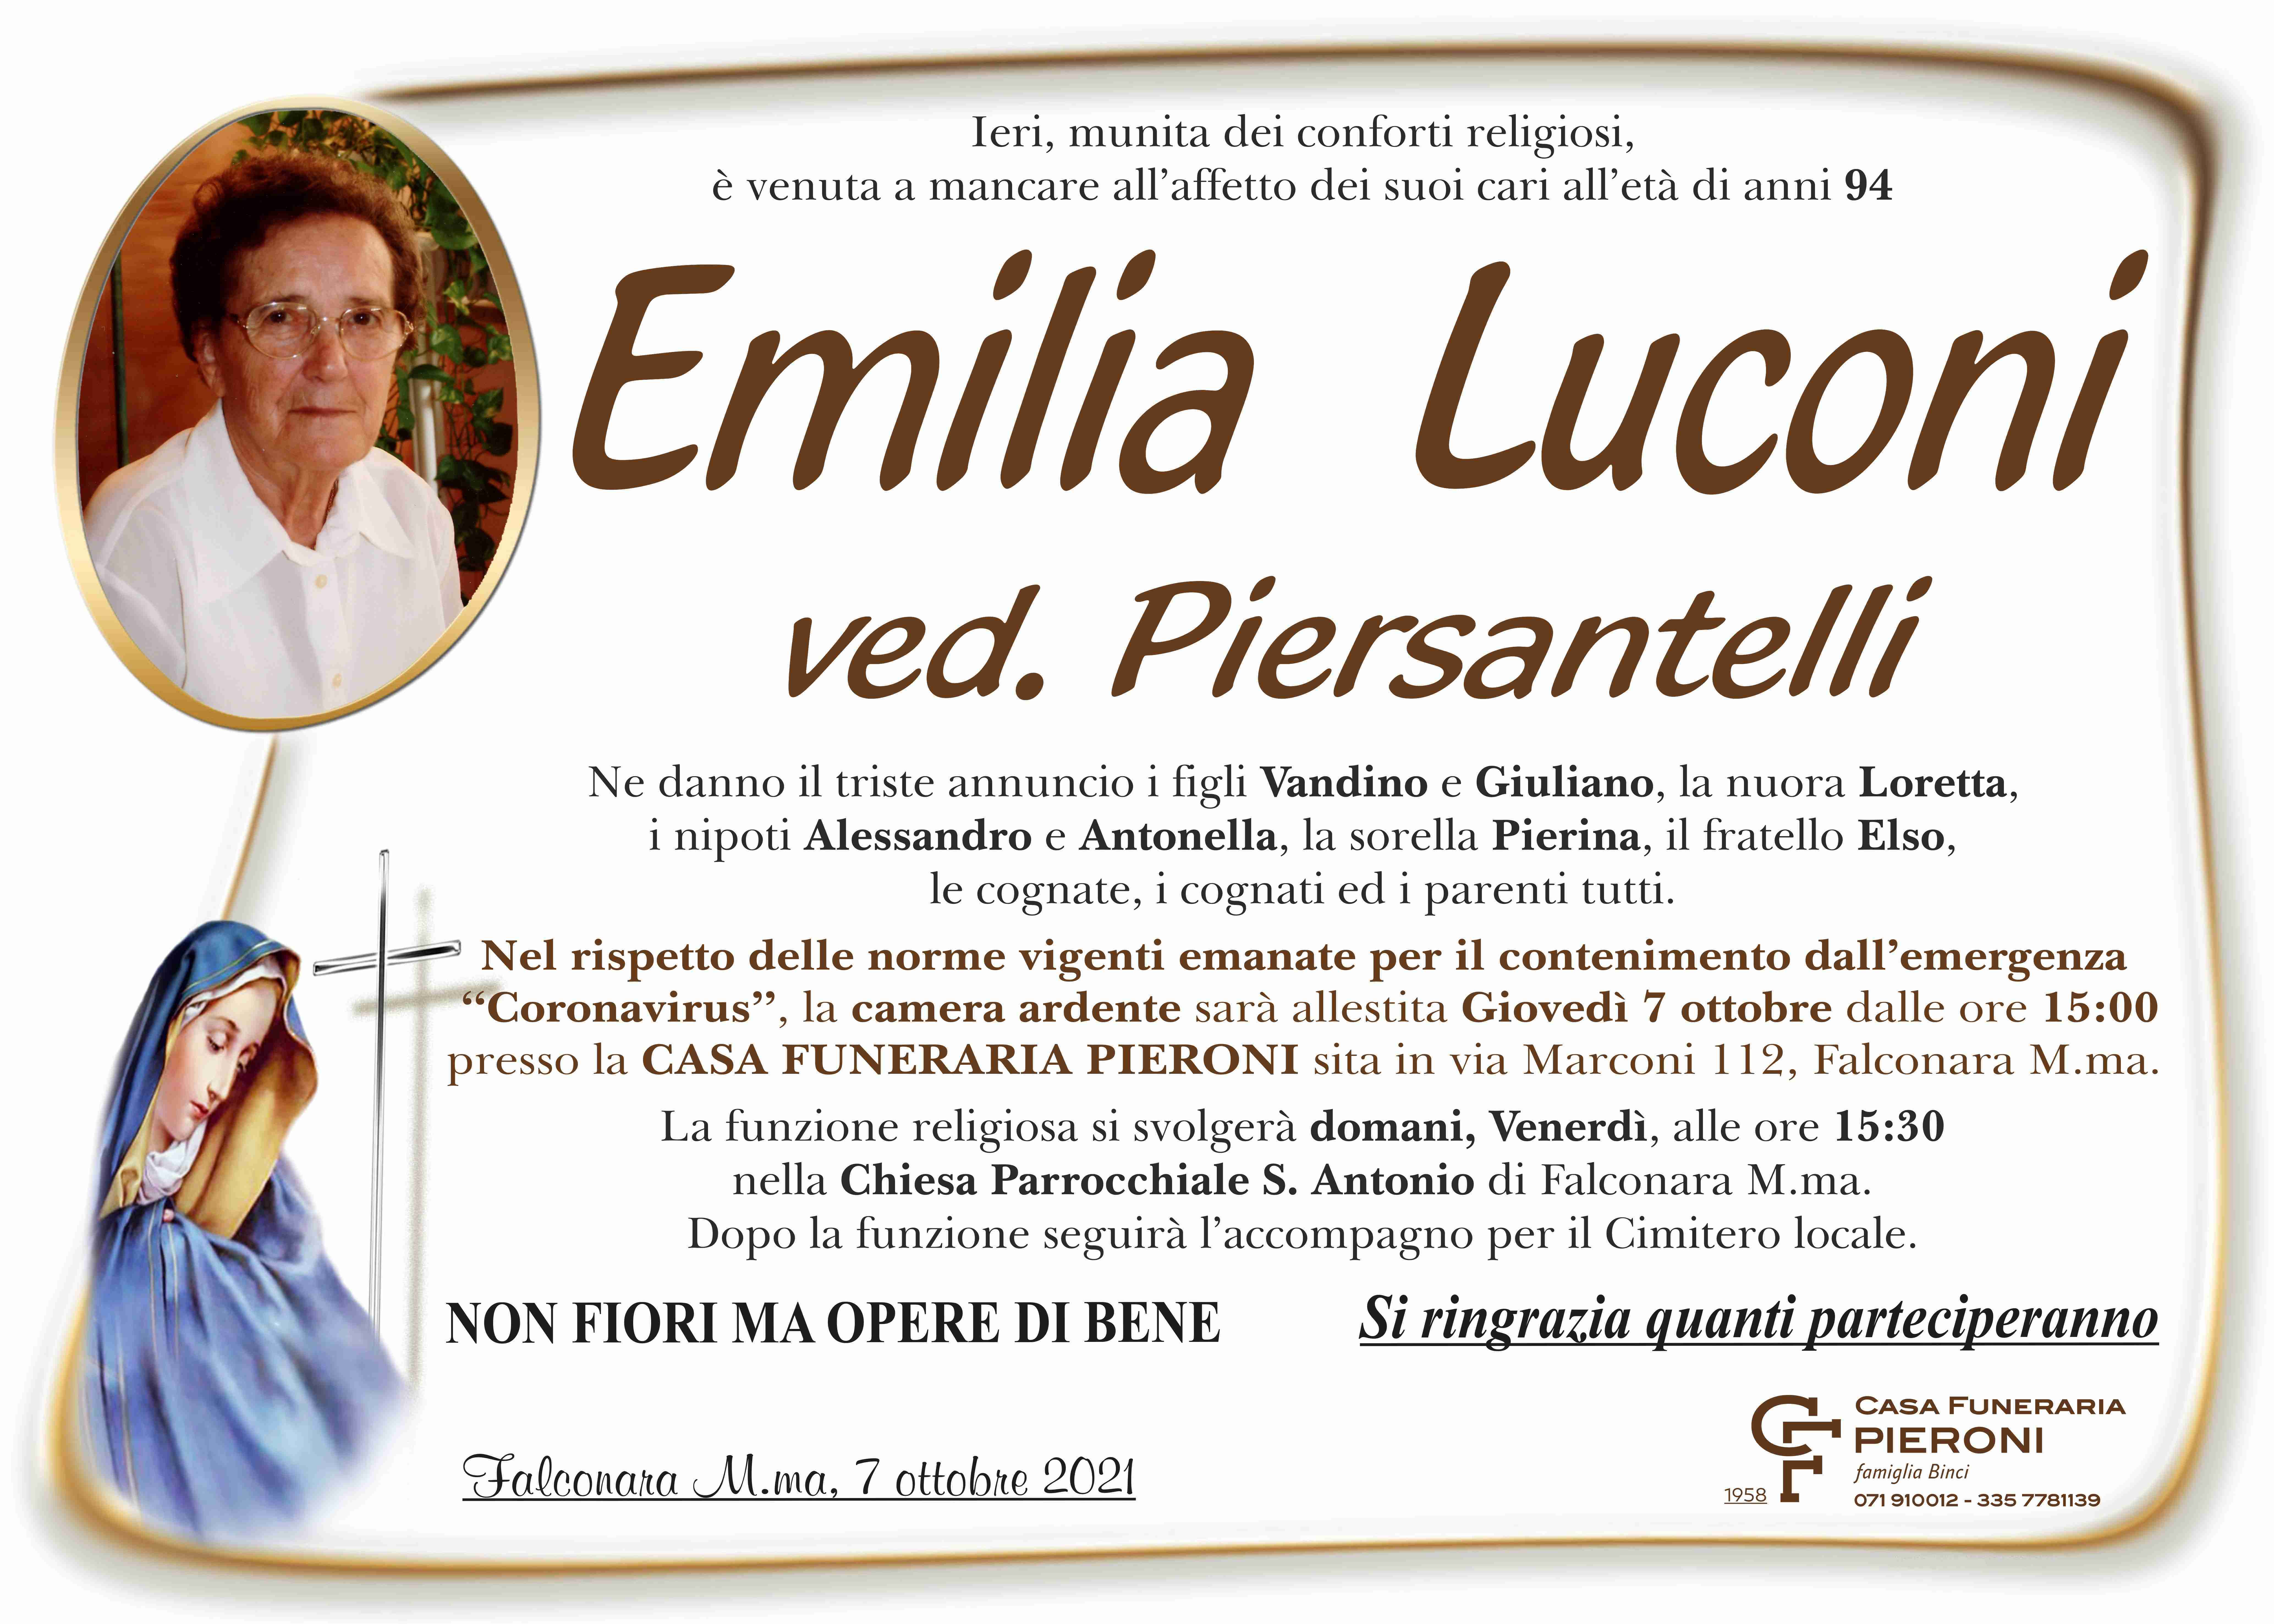 Emilia Luconi